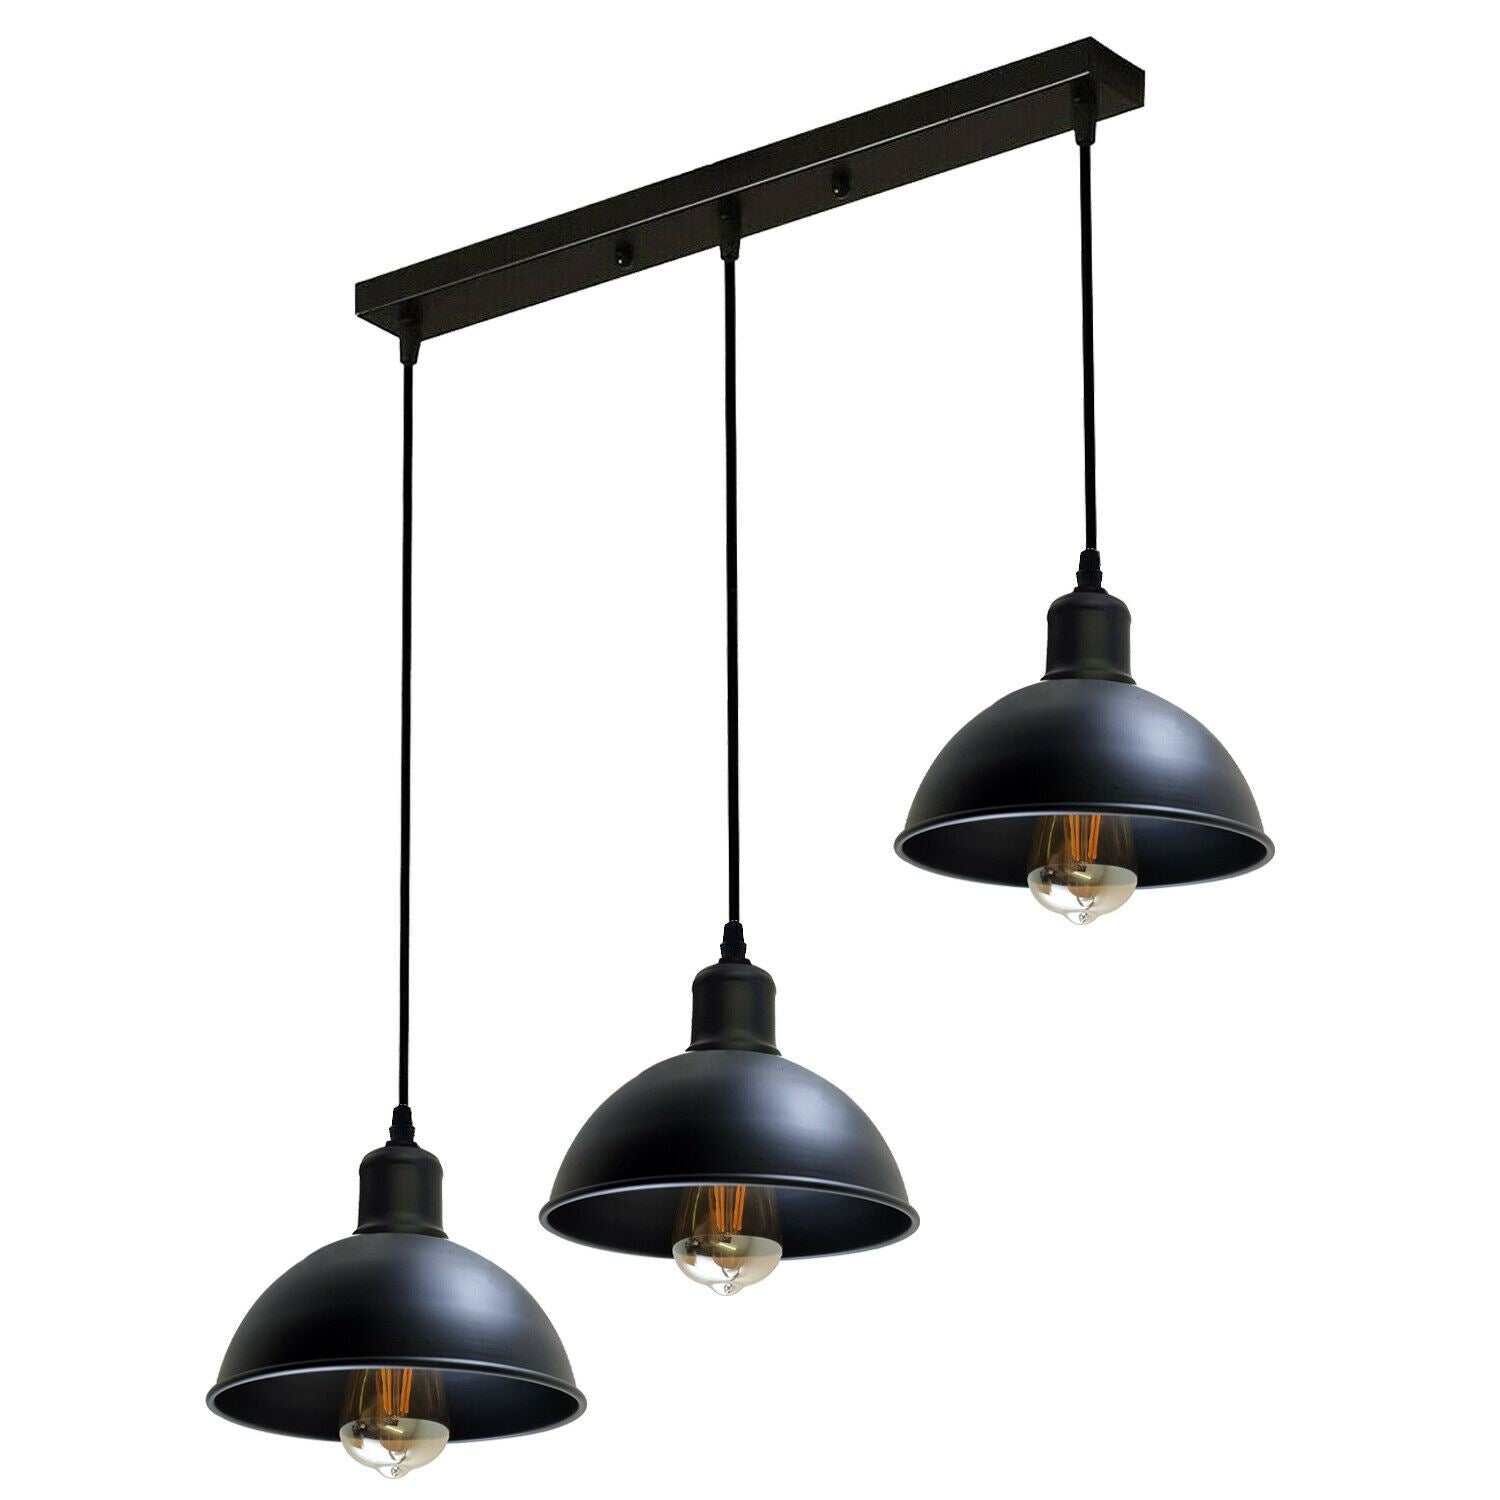 Vintage Industrial 3Head Ceiling Pendant Light Black Hanging Light Metal Dome Shape Shade Indoor Light Fitting~1242 - LEDSone UK Ltd